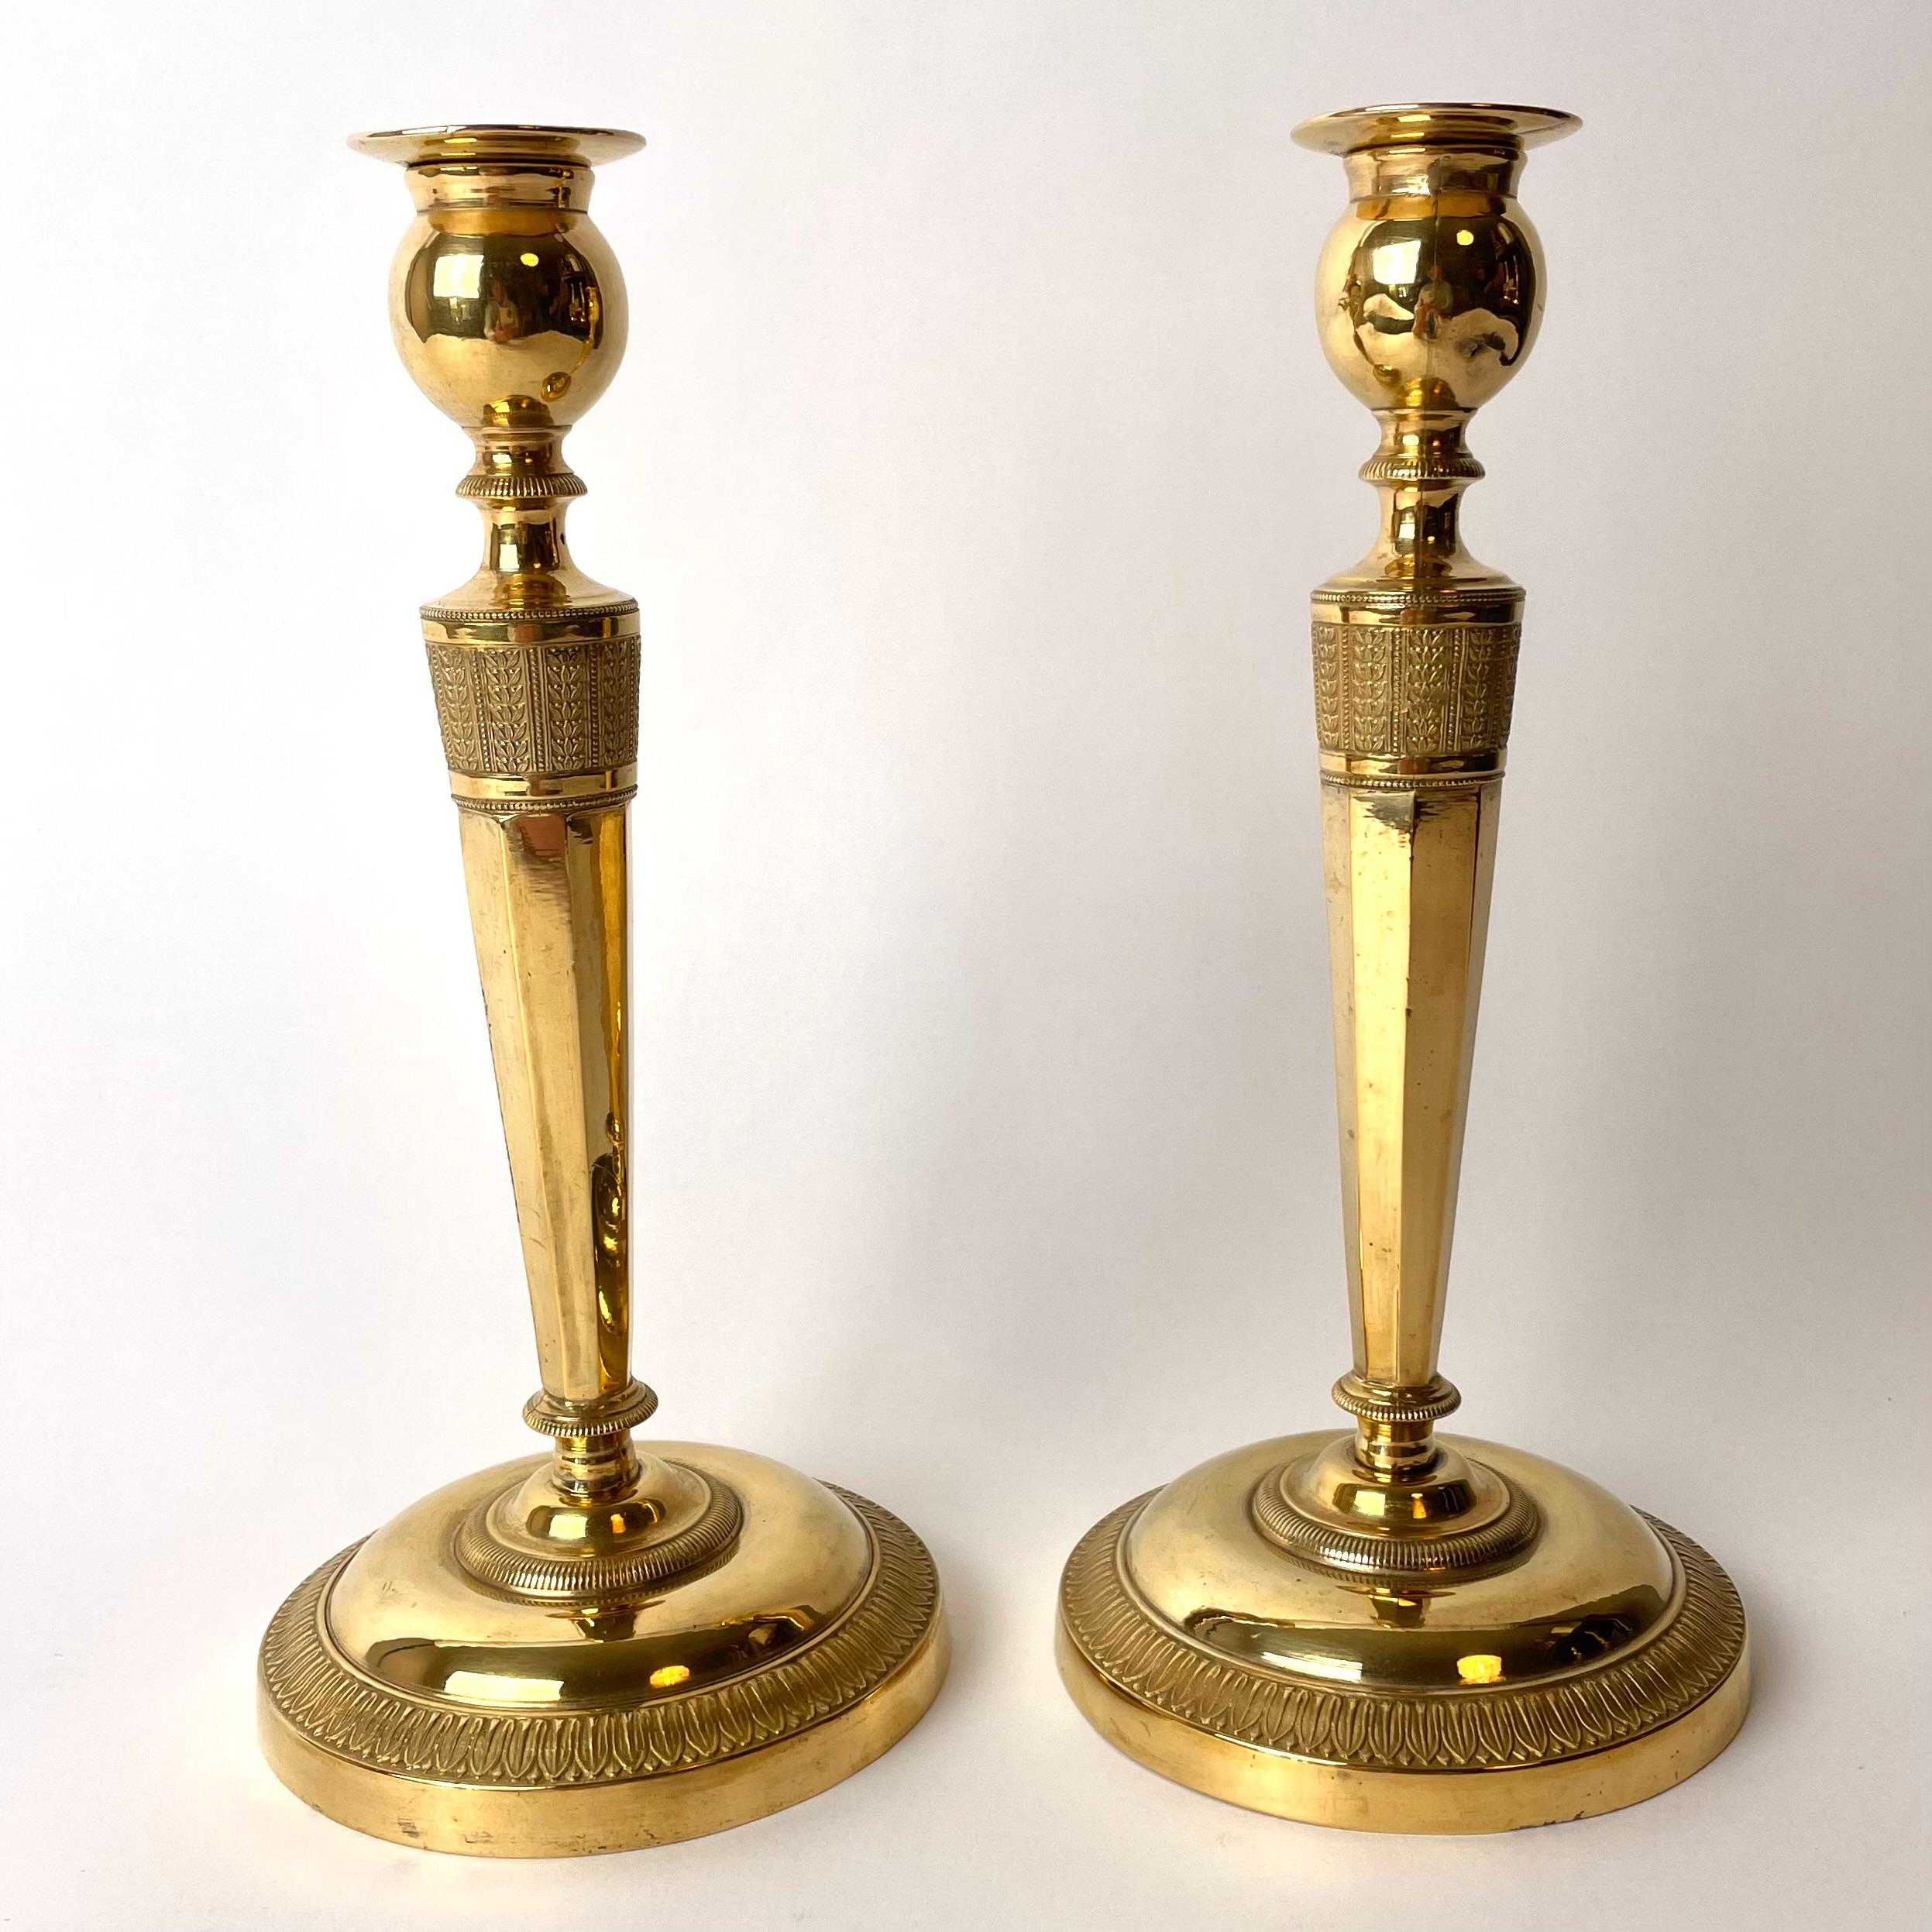 Ein Paar raffinierte und elegante Kerzenleuchter aus vergoldeter Bronze, wahrscheinlich in Paris, Frankreich, hergestellt. Directoire um 1795. Wunderschön mit Blättern verziert.

Alters- und gebrauchsbedingte Abnutzungserscheinungen.